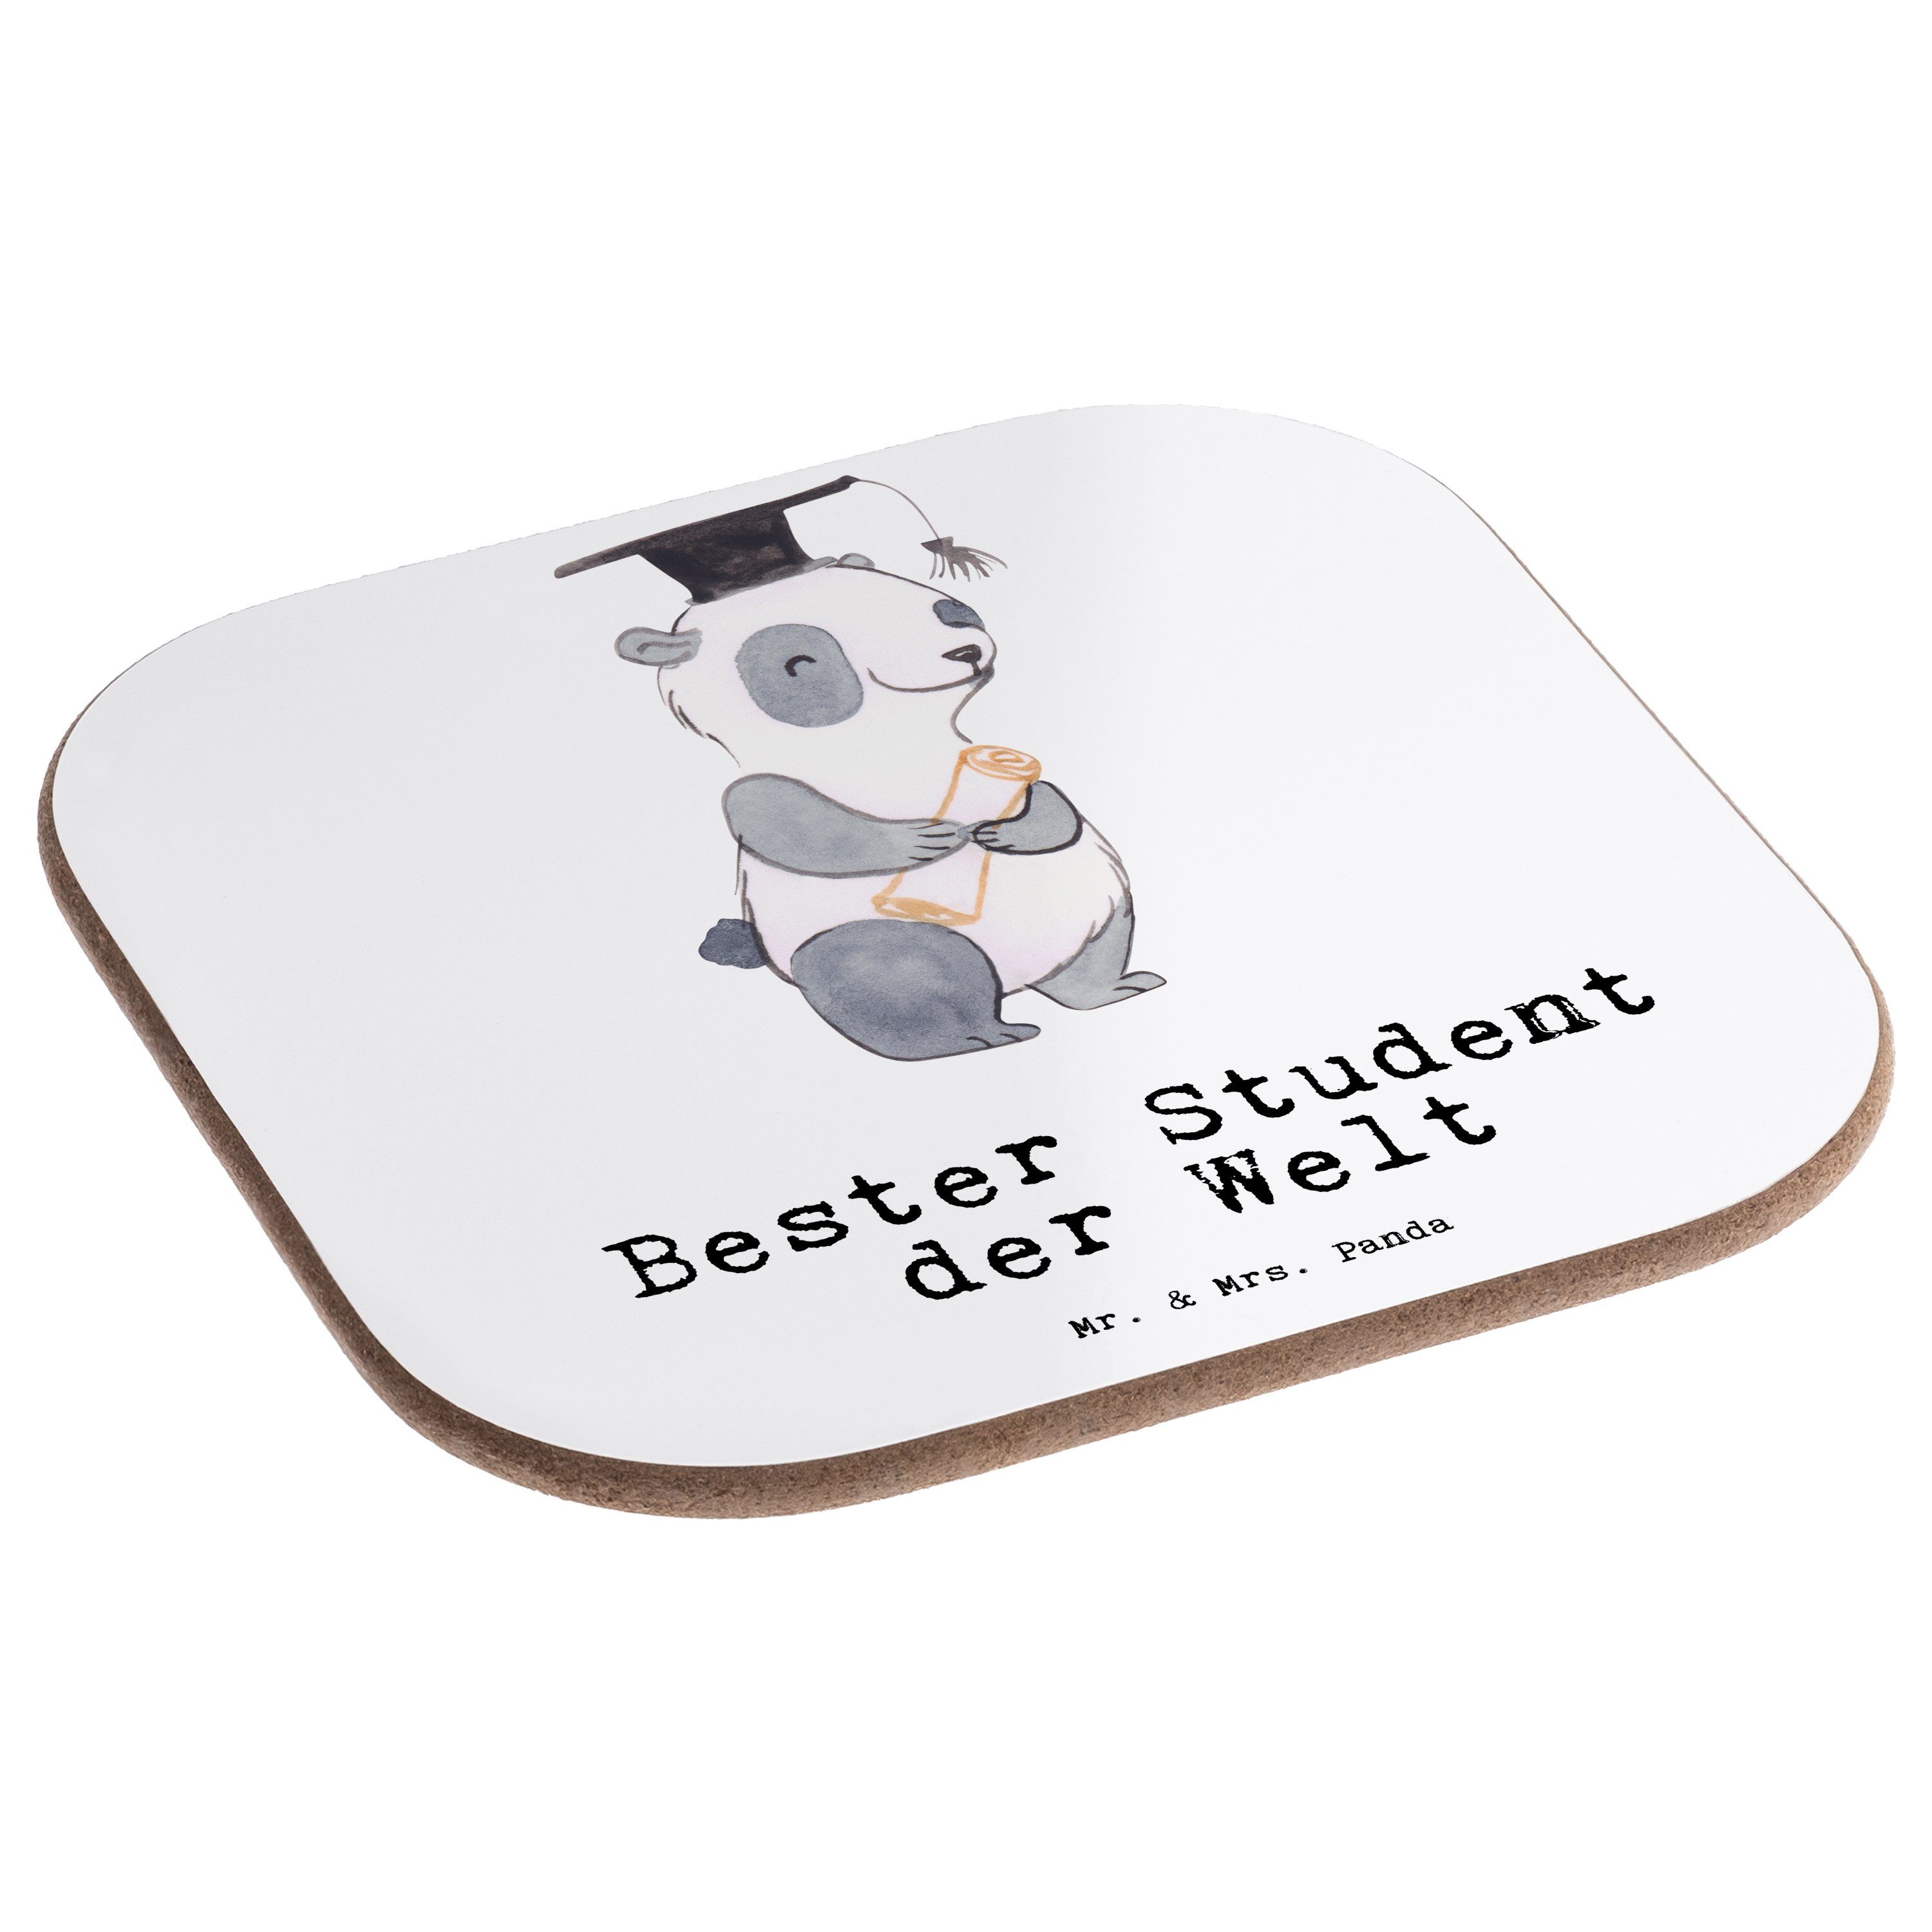 Mr. Student - Panda & der 1-tlg. Welt Bester Geschenk, Gläser, Getränkeuntersetzer Untersetzer Mrs. - Panda Weiß